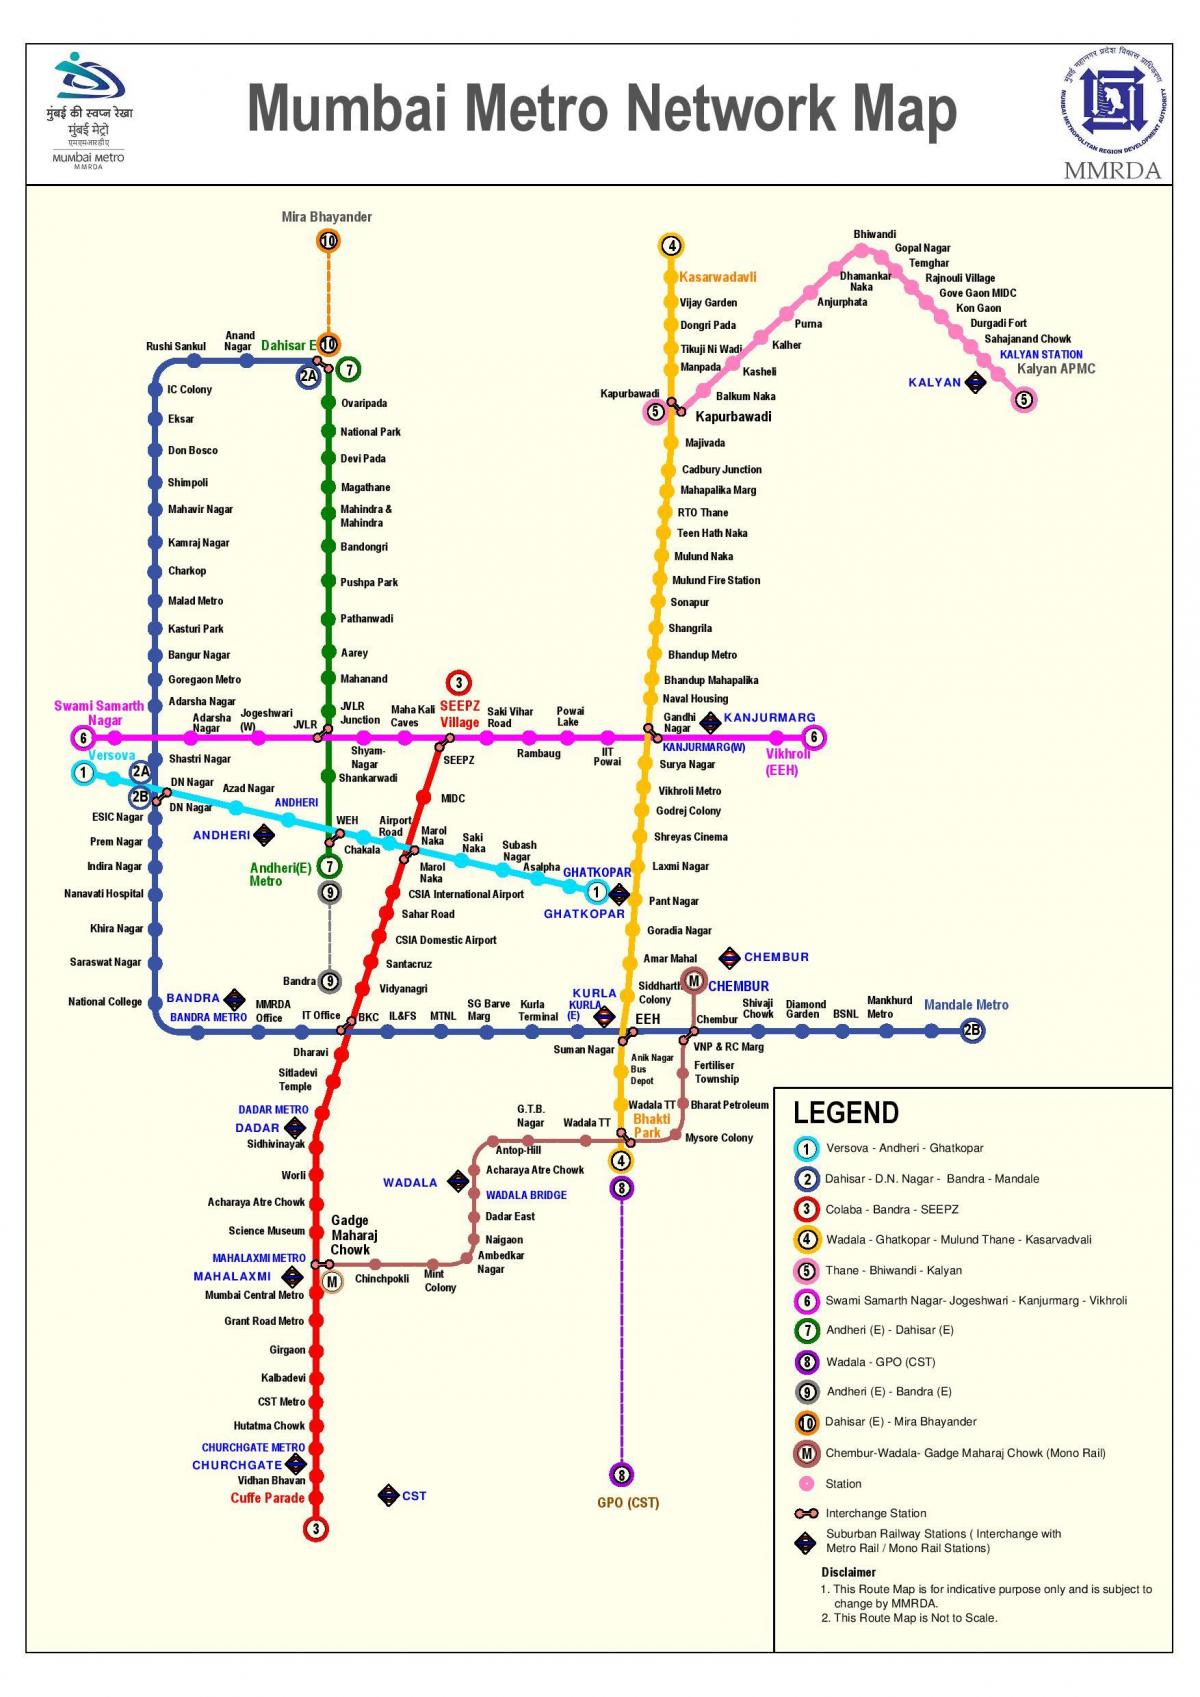 Մետրոյի գծի Մումբայի 3 երթուղու քարտեզի վրա